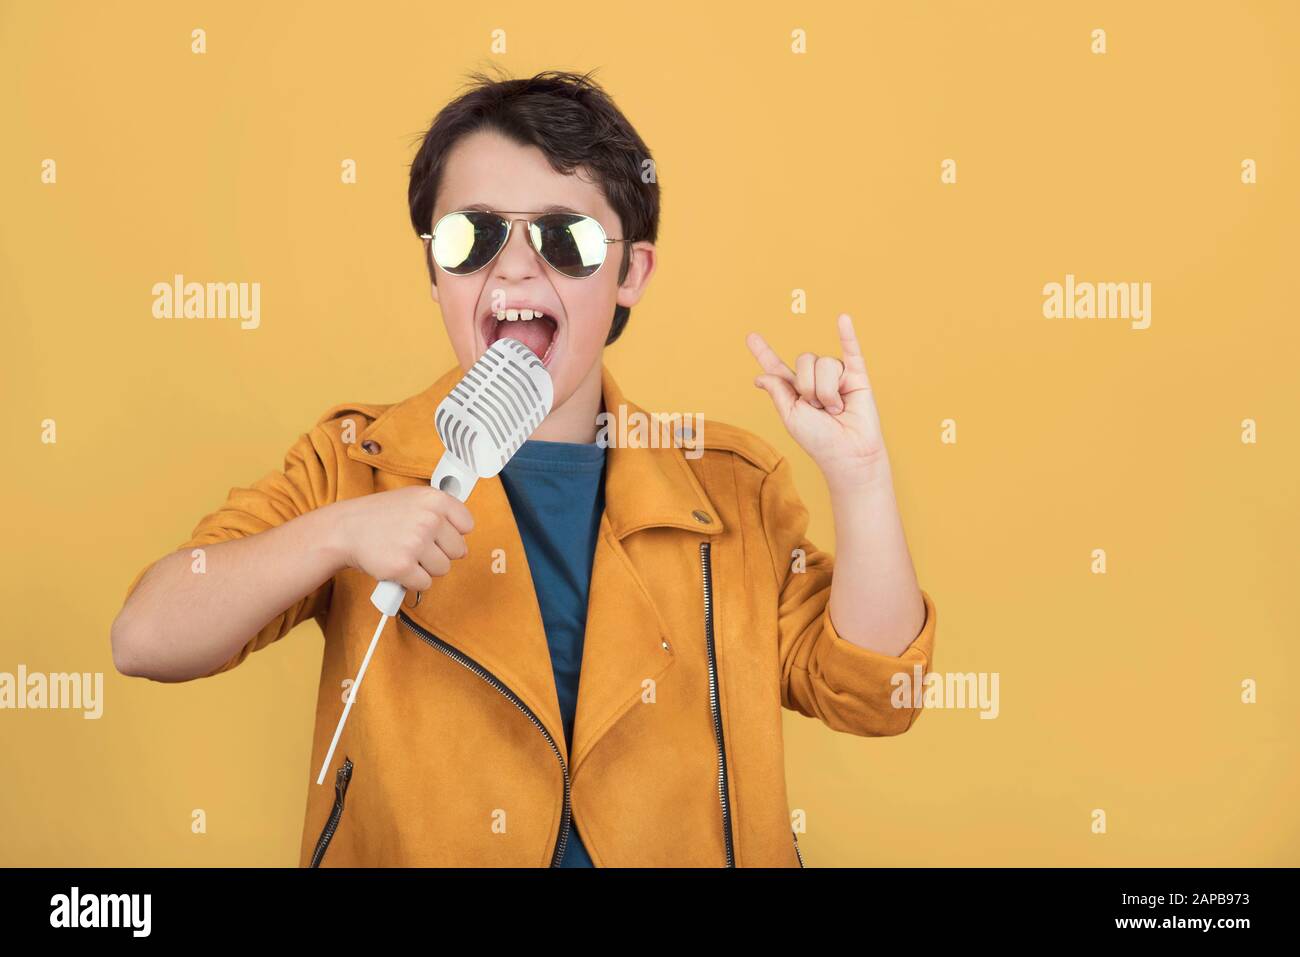 enfant avec lunettes de soleil tenant un microphone faisant le symbole rock avec les mains vers le haut sur fond jaune Banque D'Images